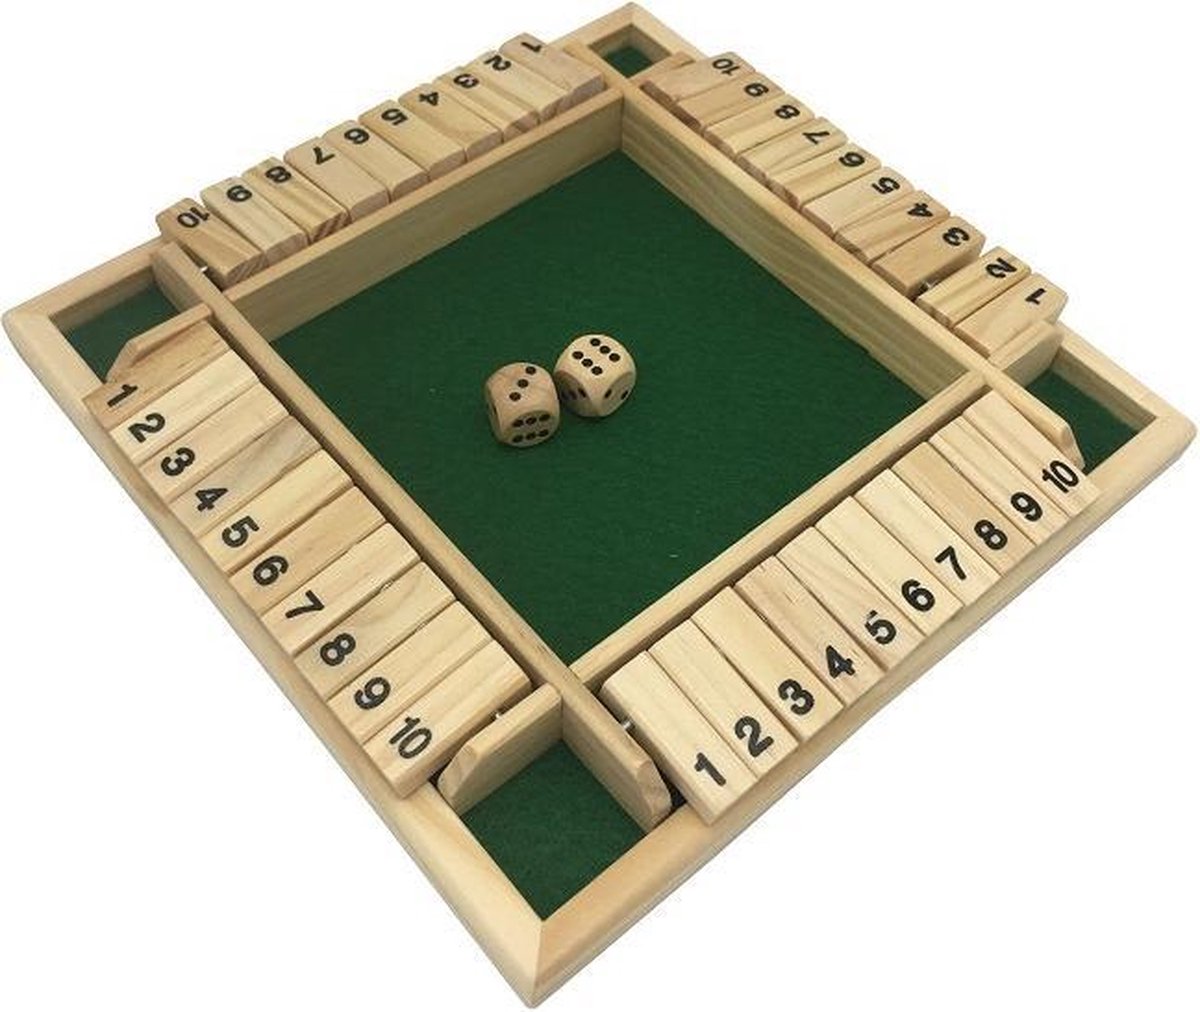 Shut the box 4 personen - Dobbelspel - Bordspel - Bordspellen - drankspel- gezelschapsspel voor volwassenen en kinderen - MEHO bordspellen